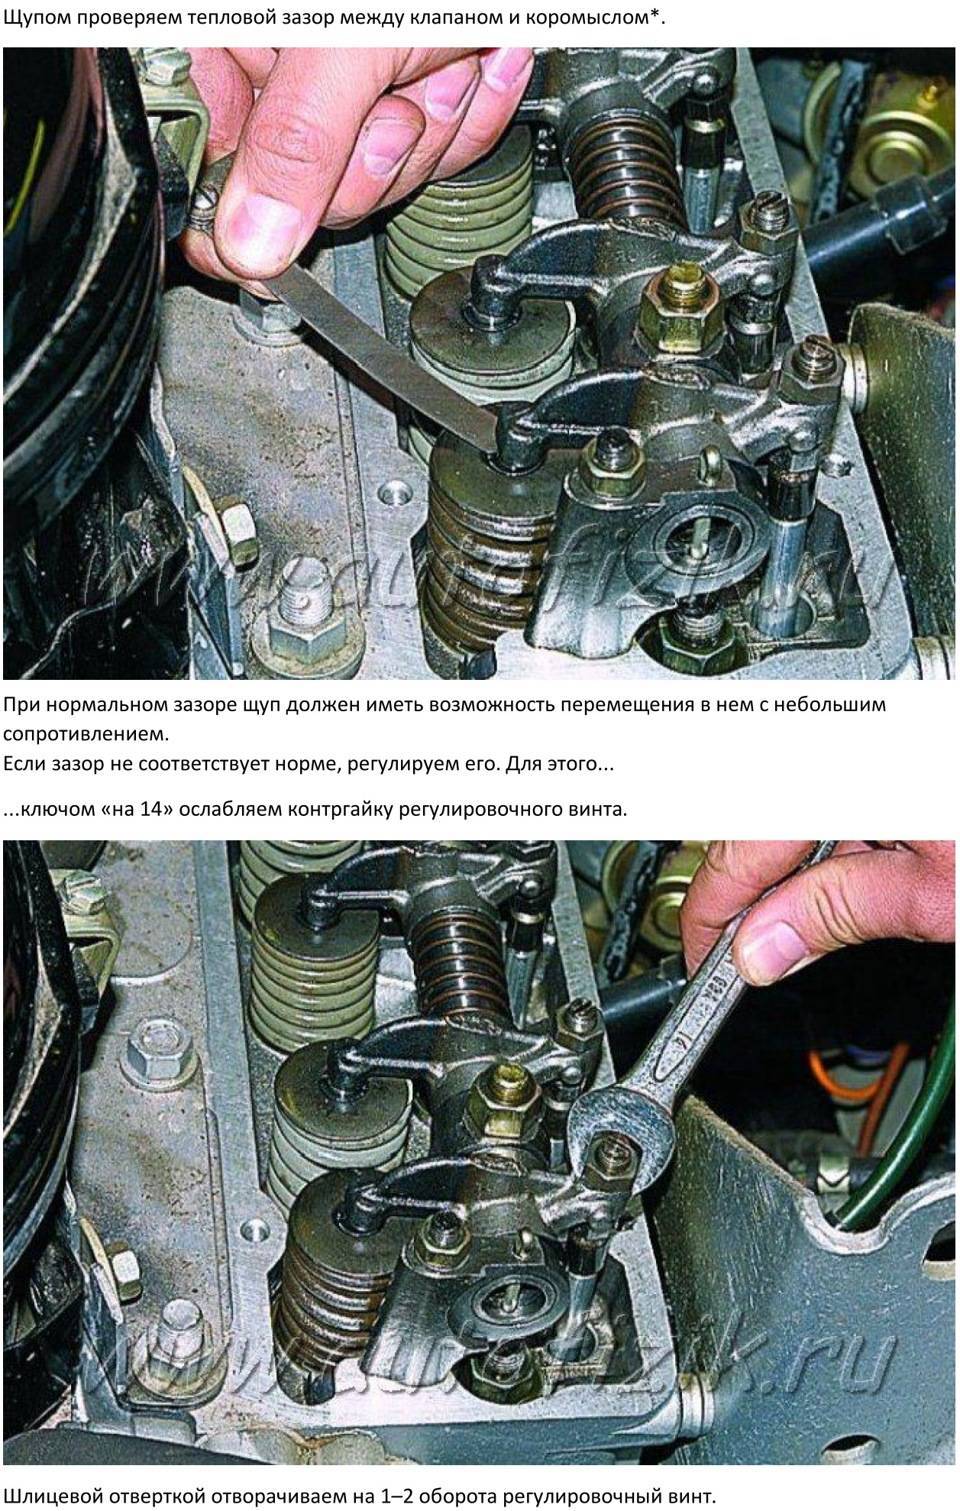 Регулировка клапанов двигателя змз-402 вручную